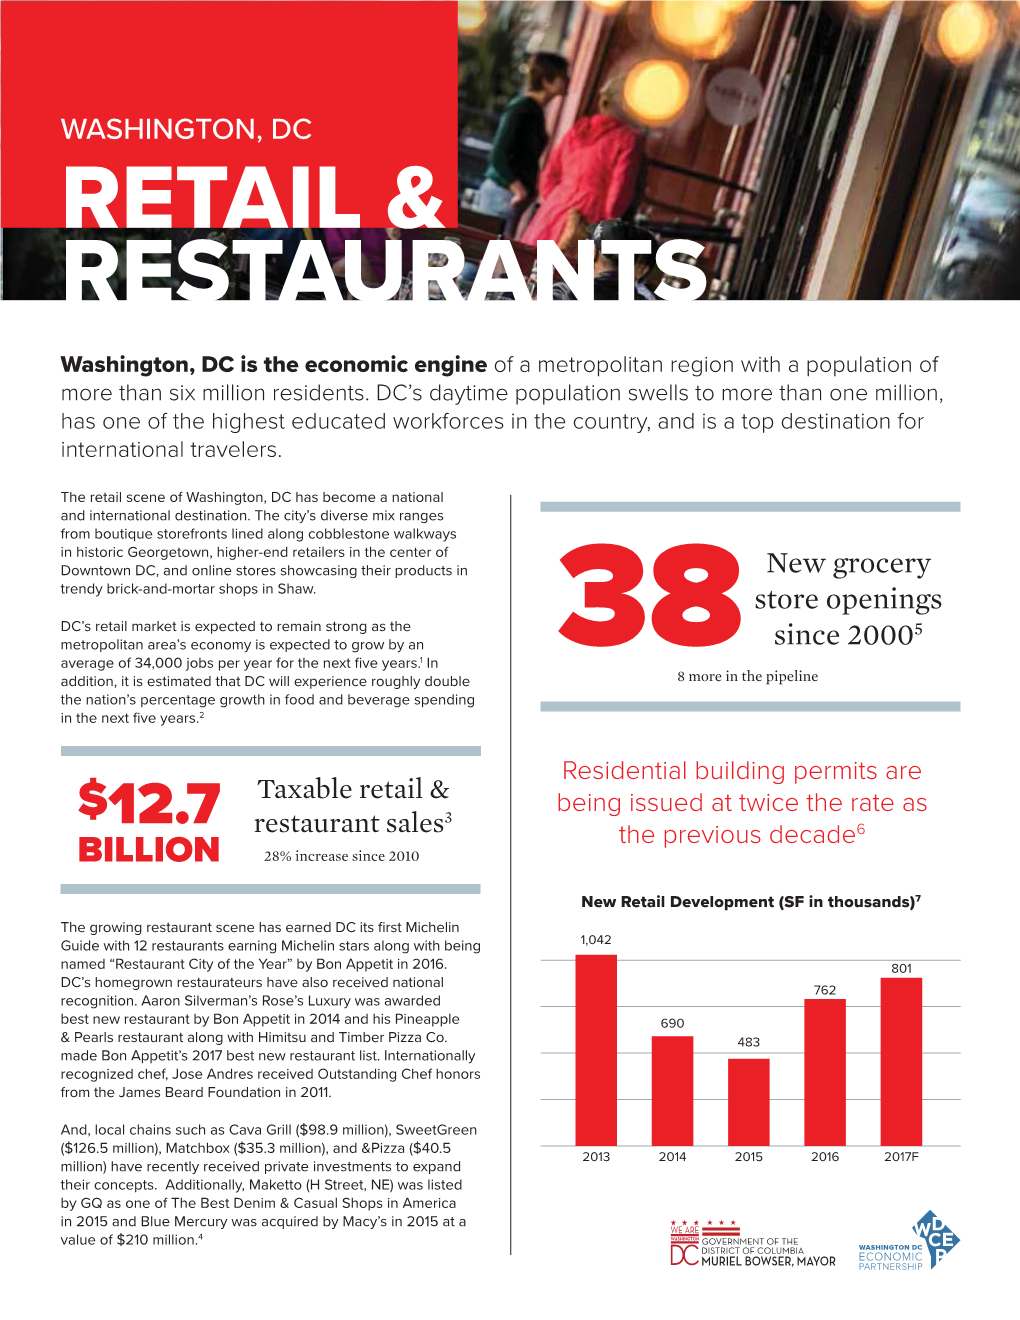 Retail & Restaurants